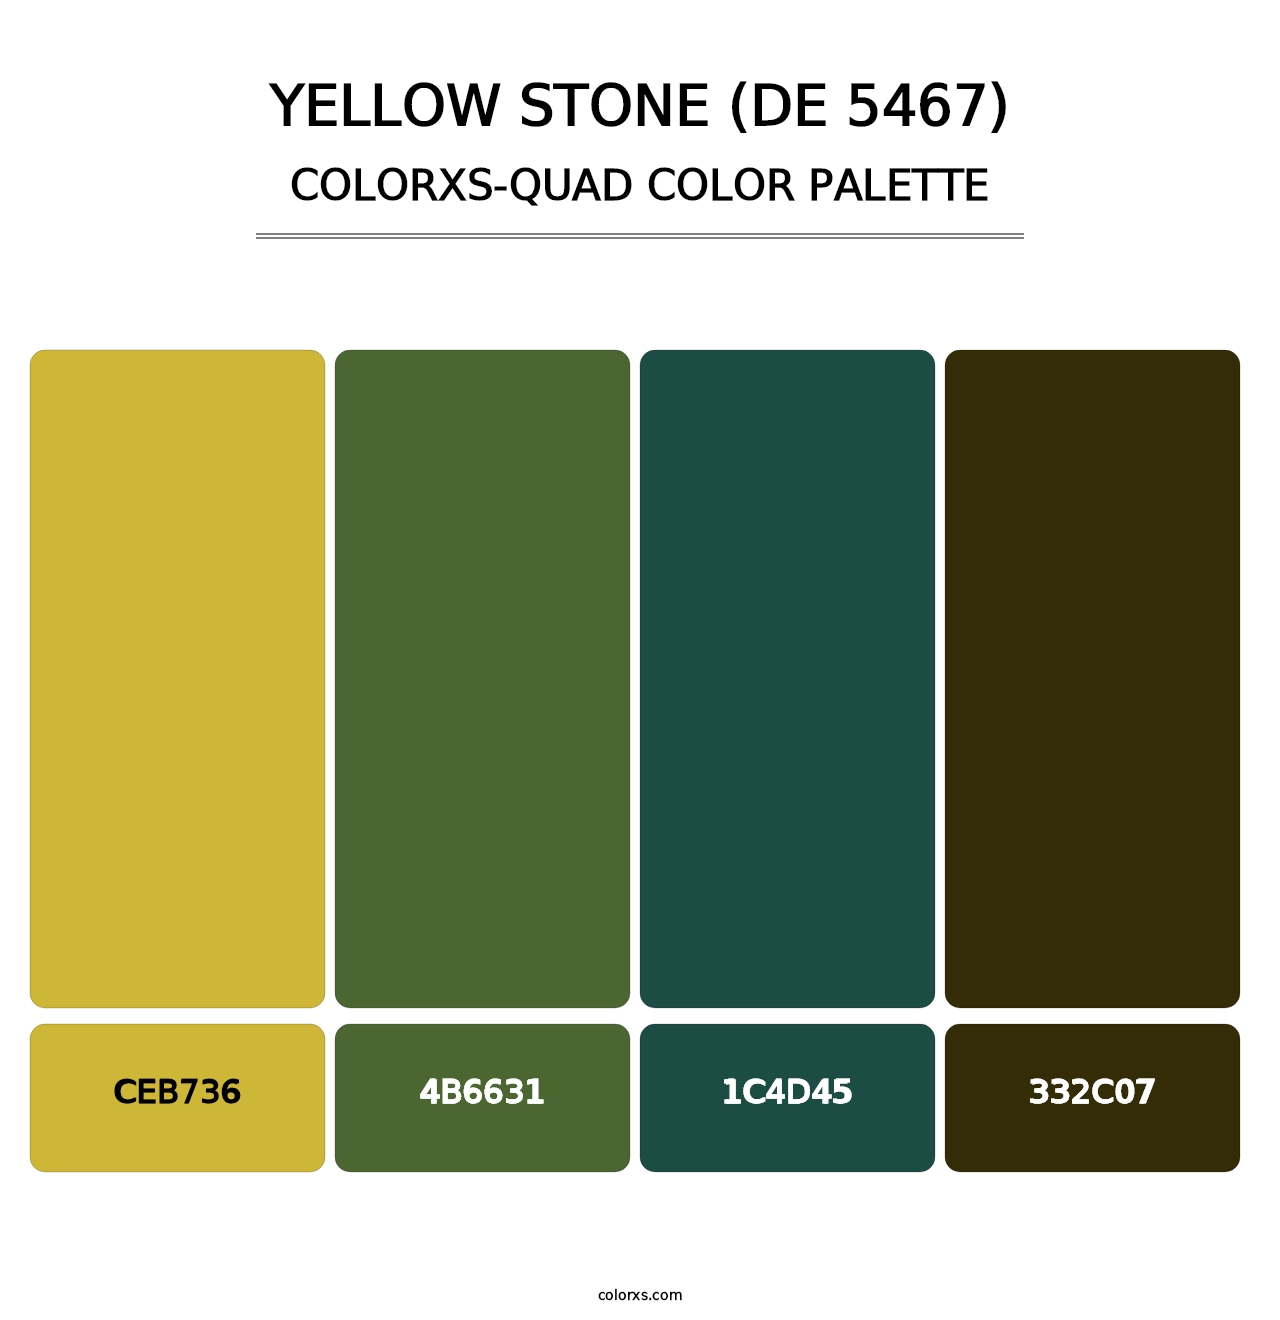 Yellow Stone (DE 5467) - Colorxs Quad Palette